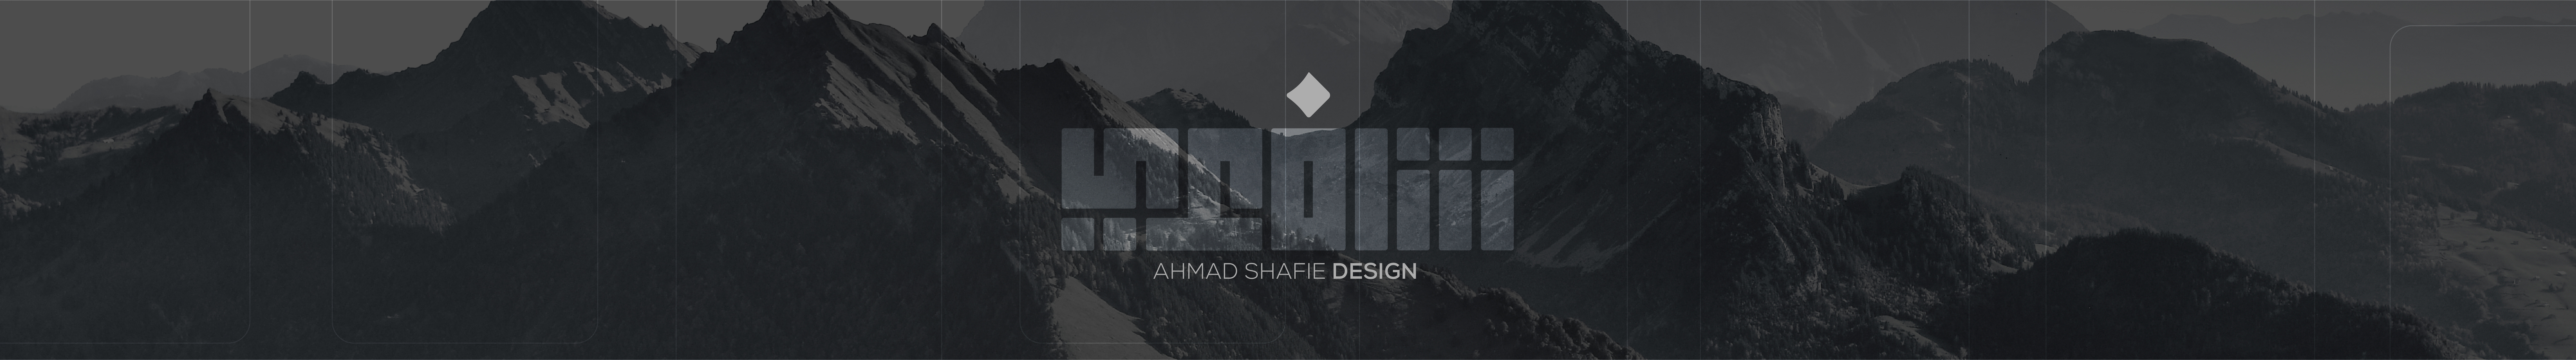 Profil-Banner von ahmad shafie